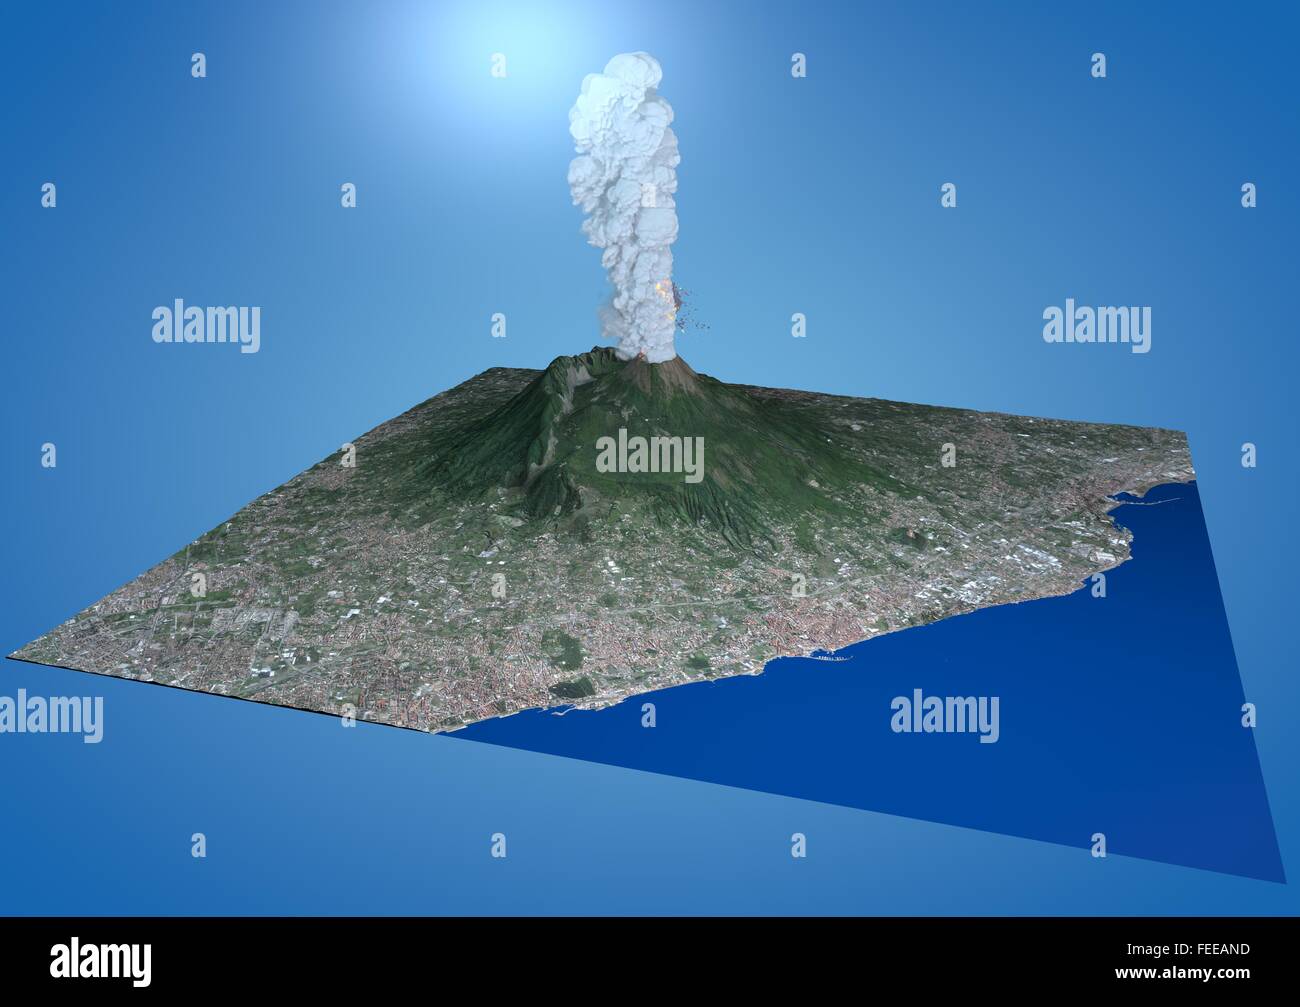 Vue du volcan Vésuve, éruption, 3d, Italie Campania Banque D'Images